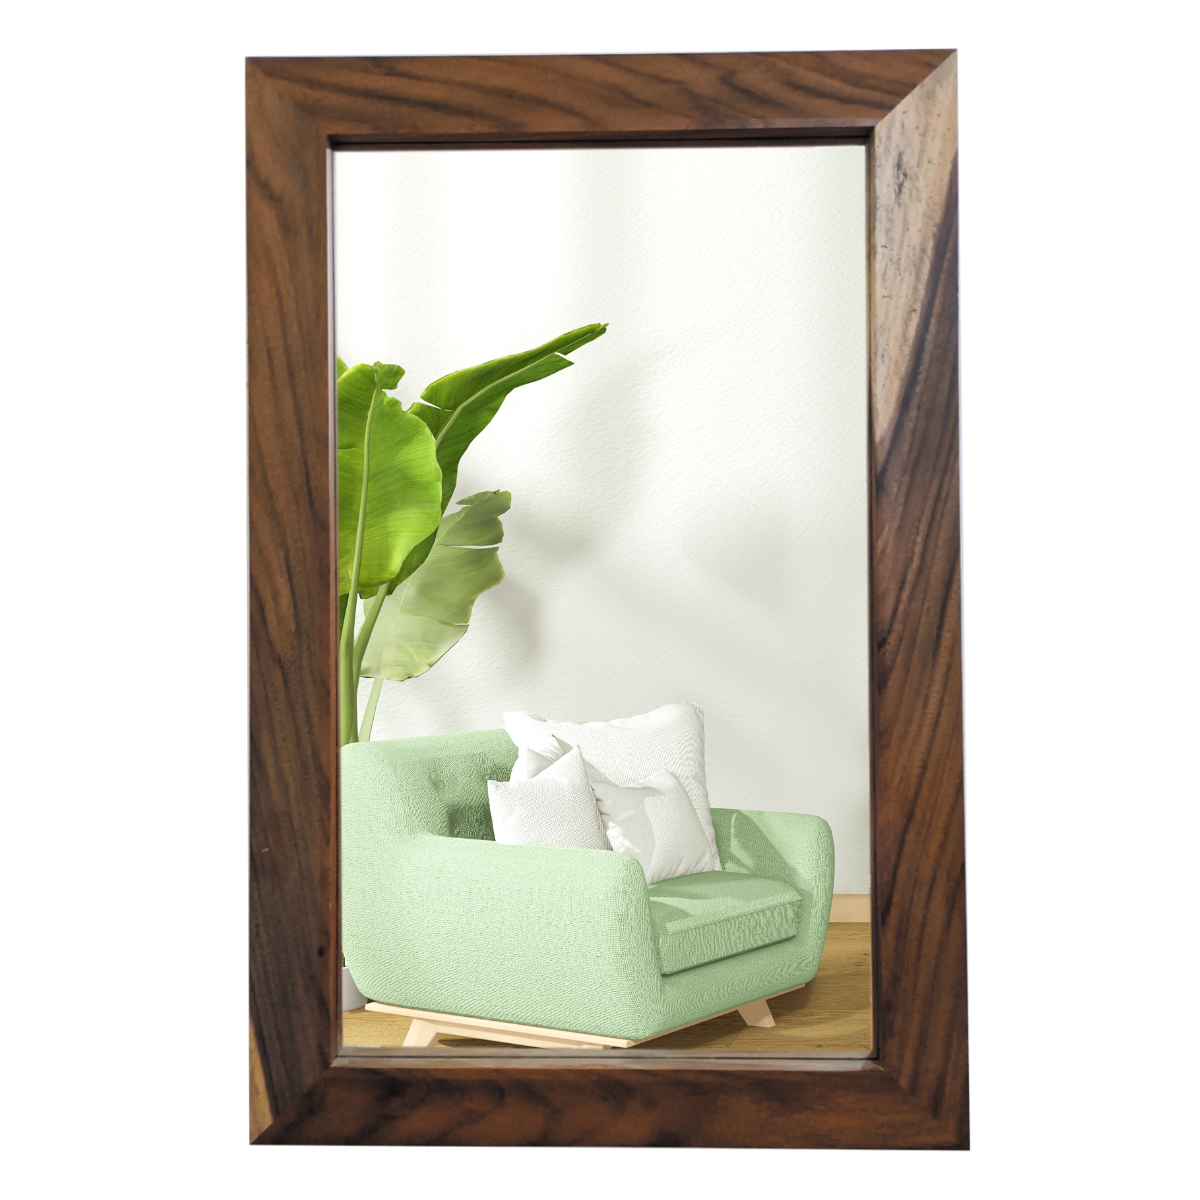 Parota Home Decor on Instagram: Nuestros espejos ovalados !!! Este de .60  x 1.80 en madera sólida de Parota !!!